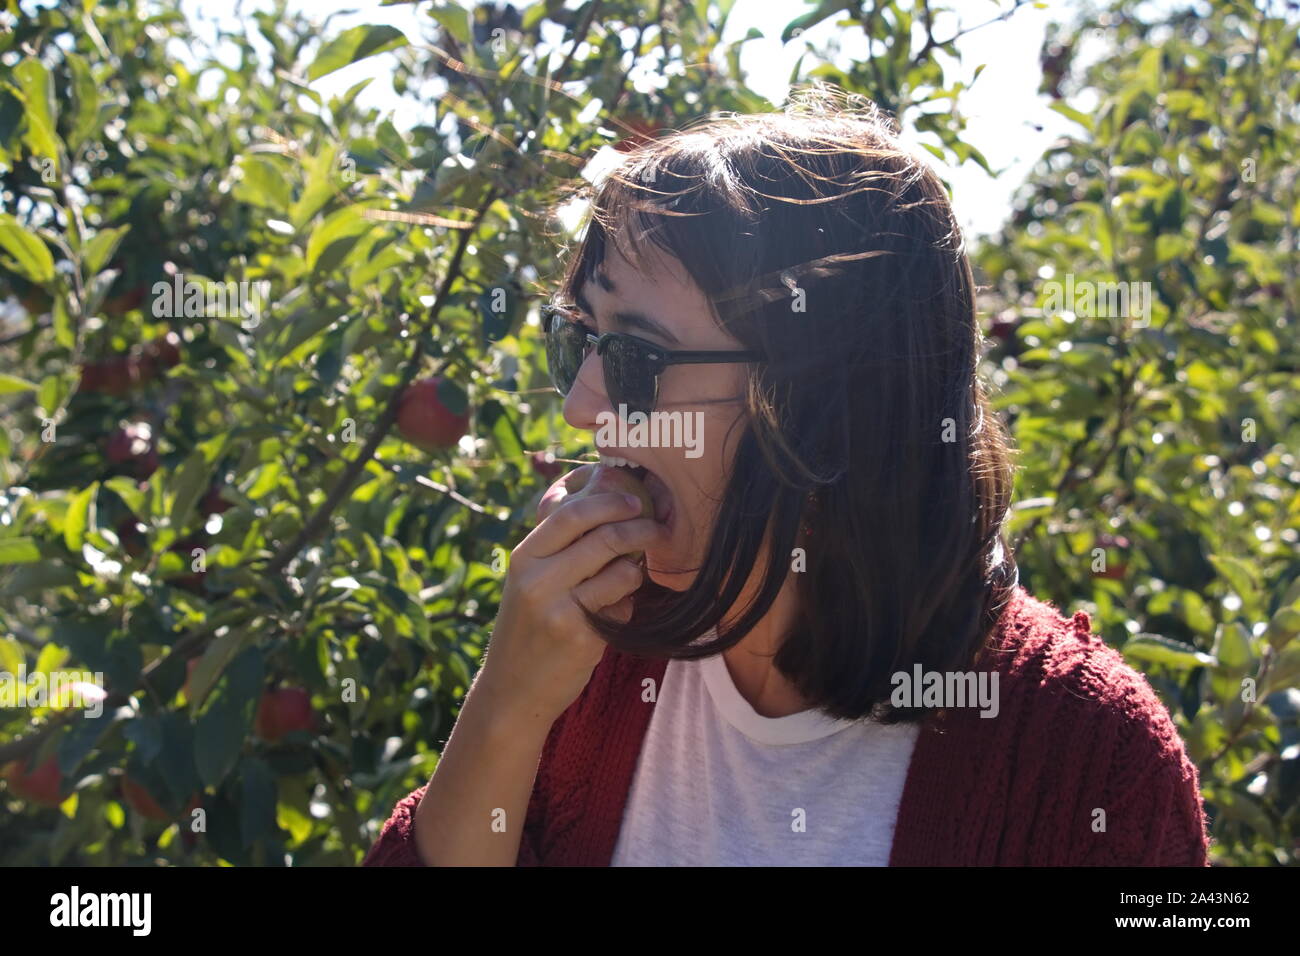 2229, TC / USA - 19 octobre 2017 : Young Asian woman prenant une bouchée d'une pomme juteuse dans le patch apple Banque D'Images